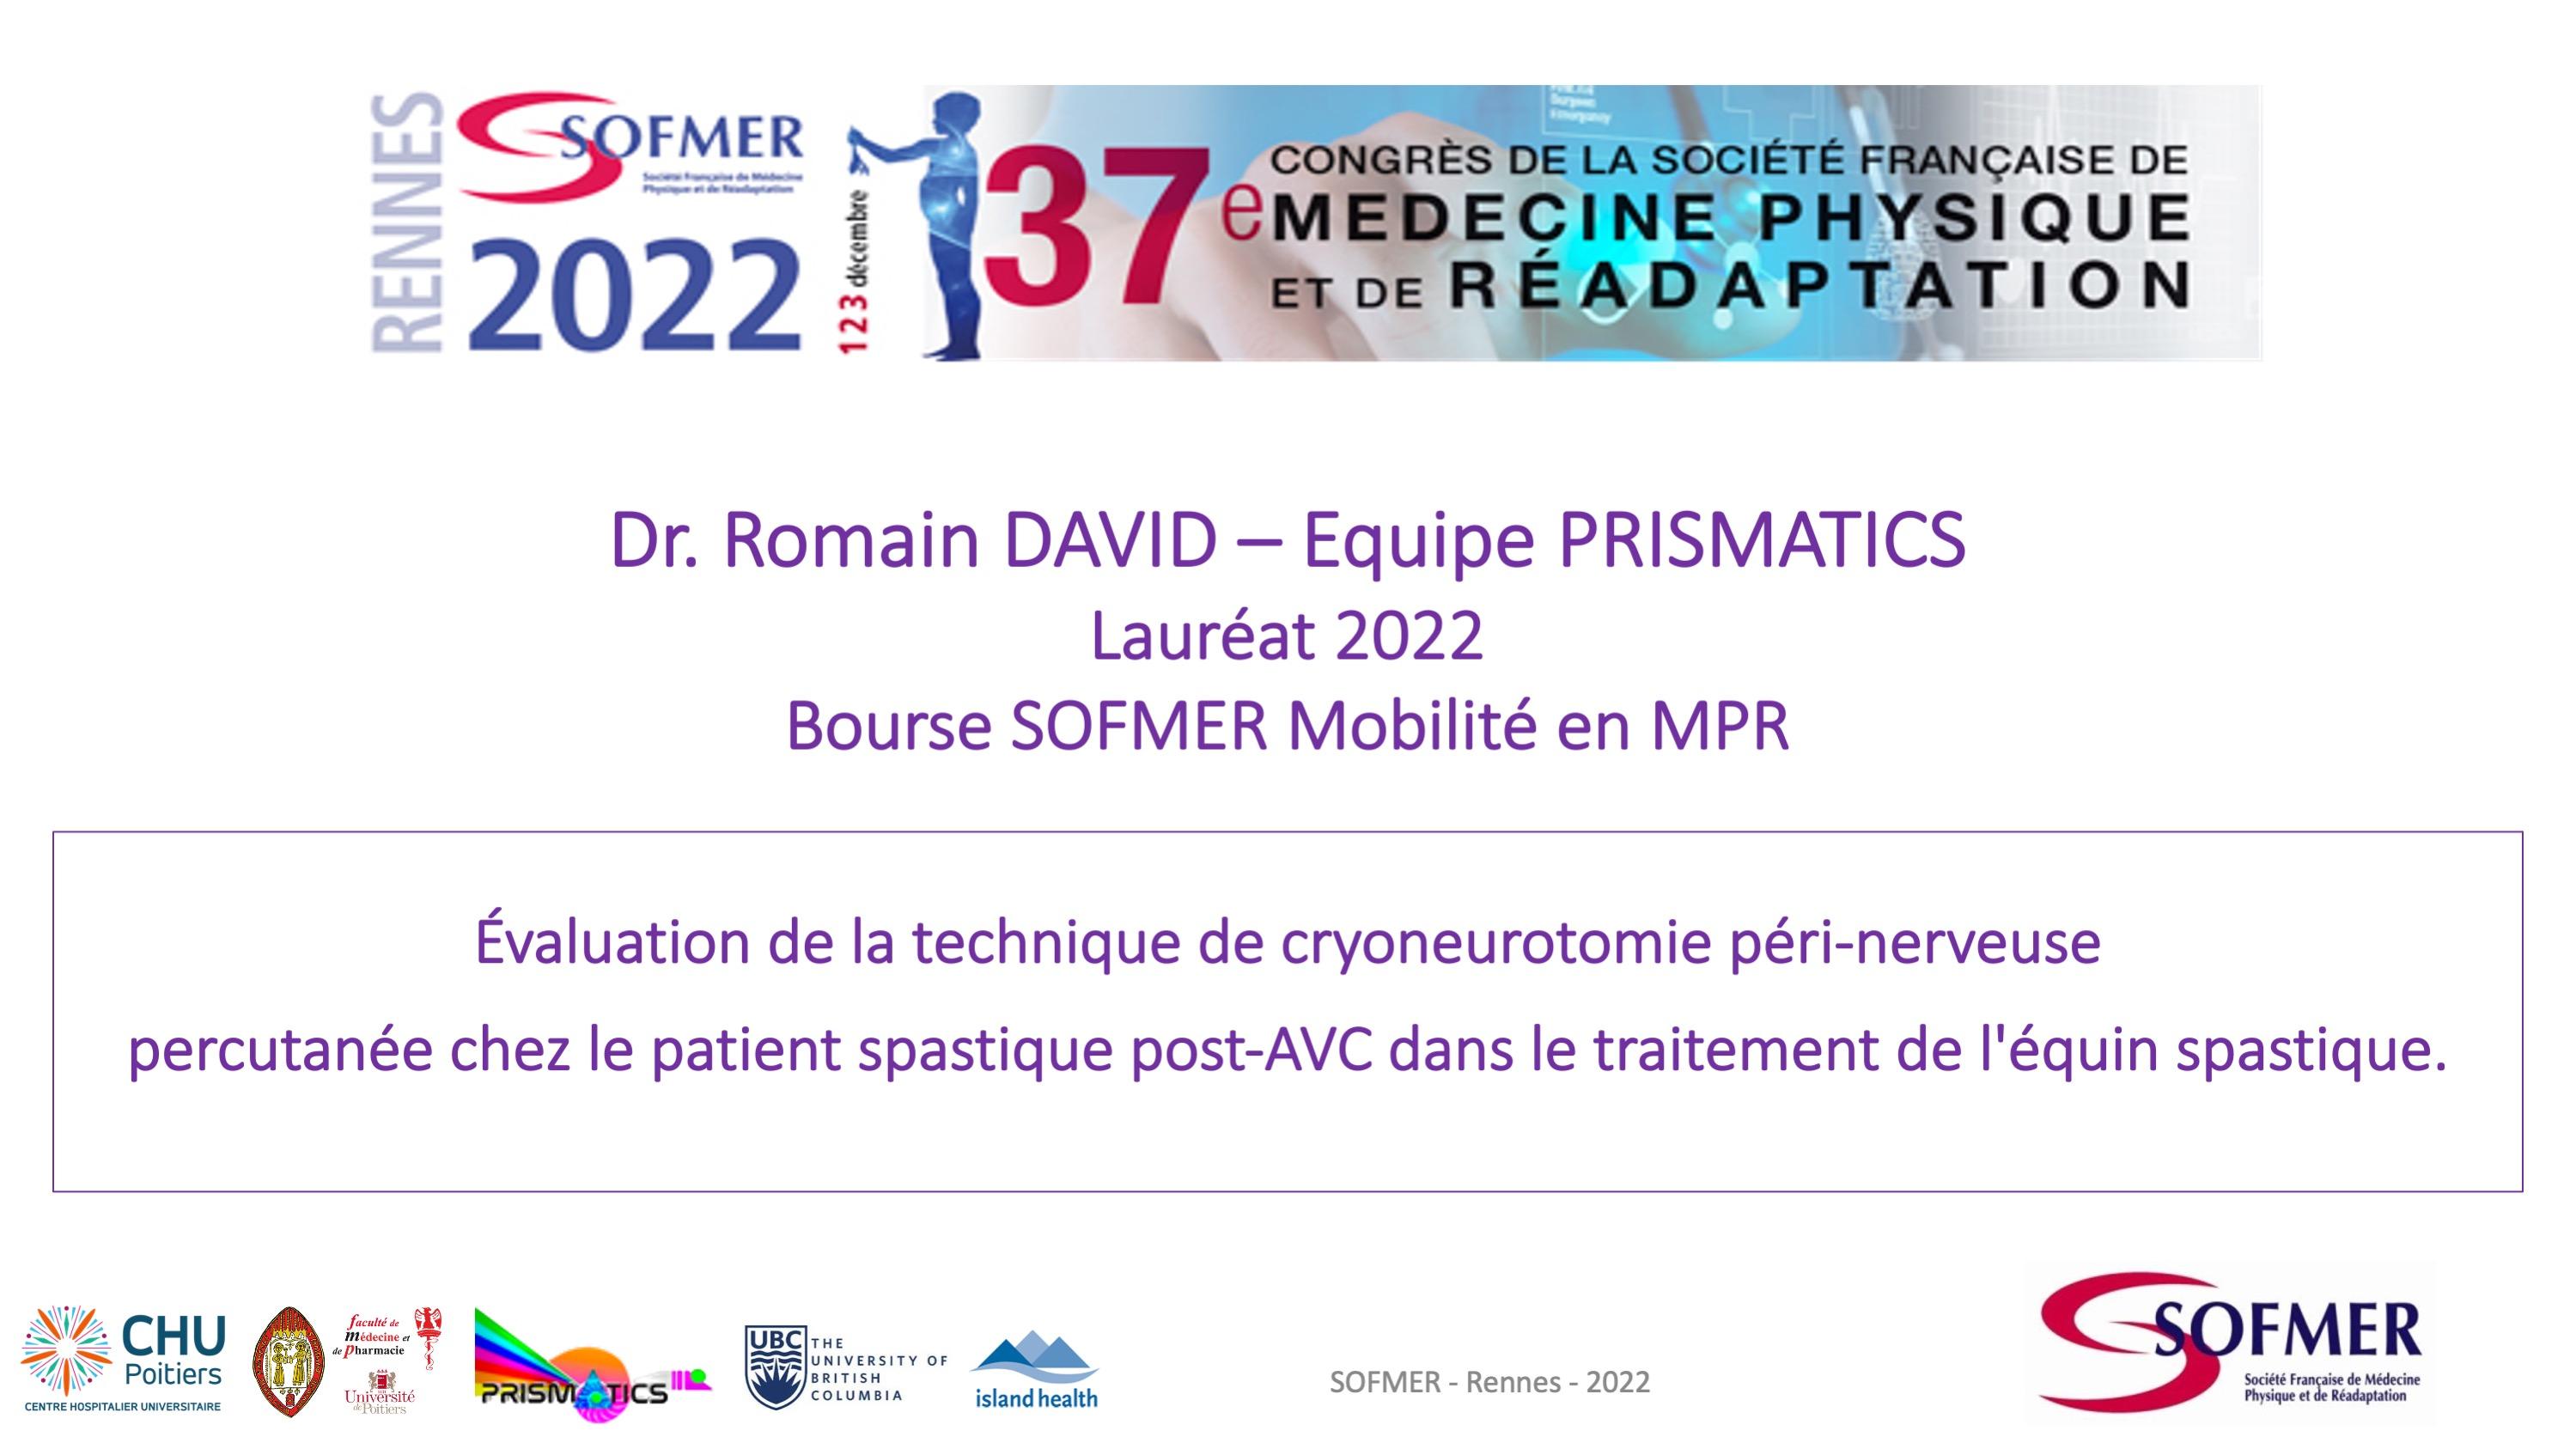 Bourse de Mobilité SOFMER - Lauréat 2022 - Romain DAVID 